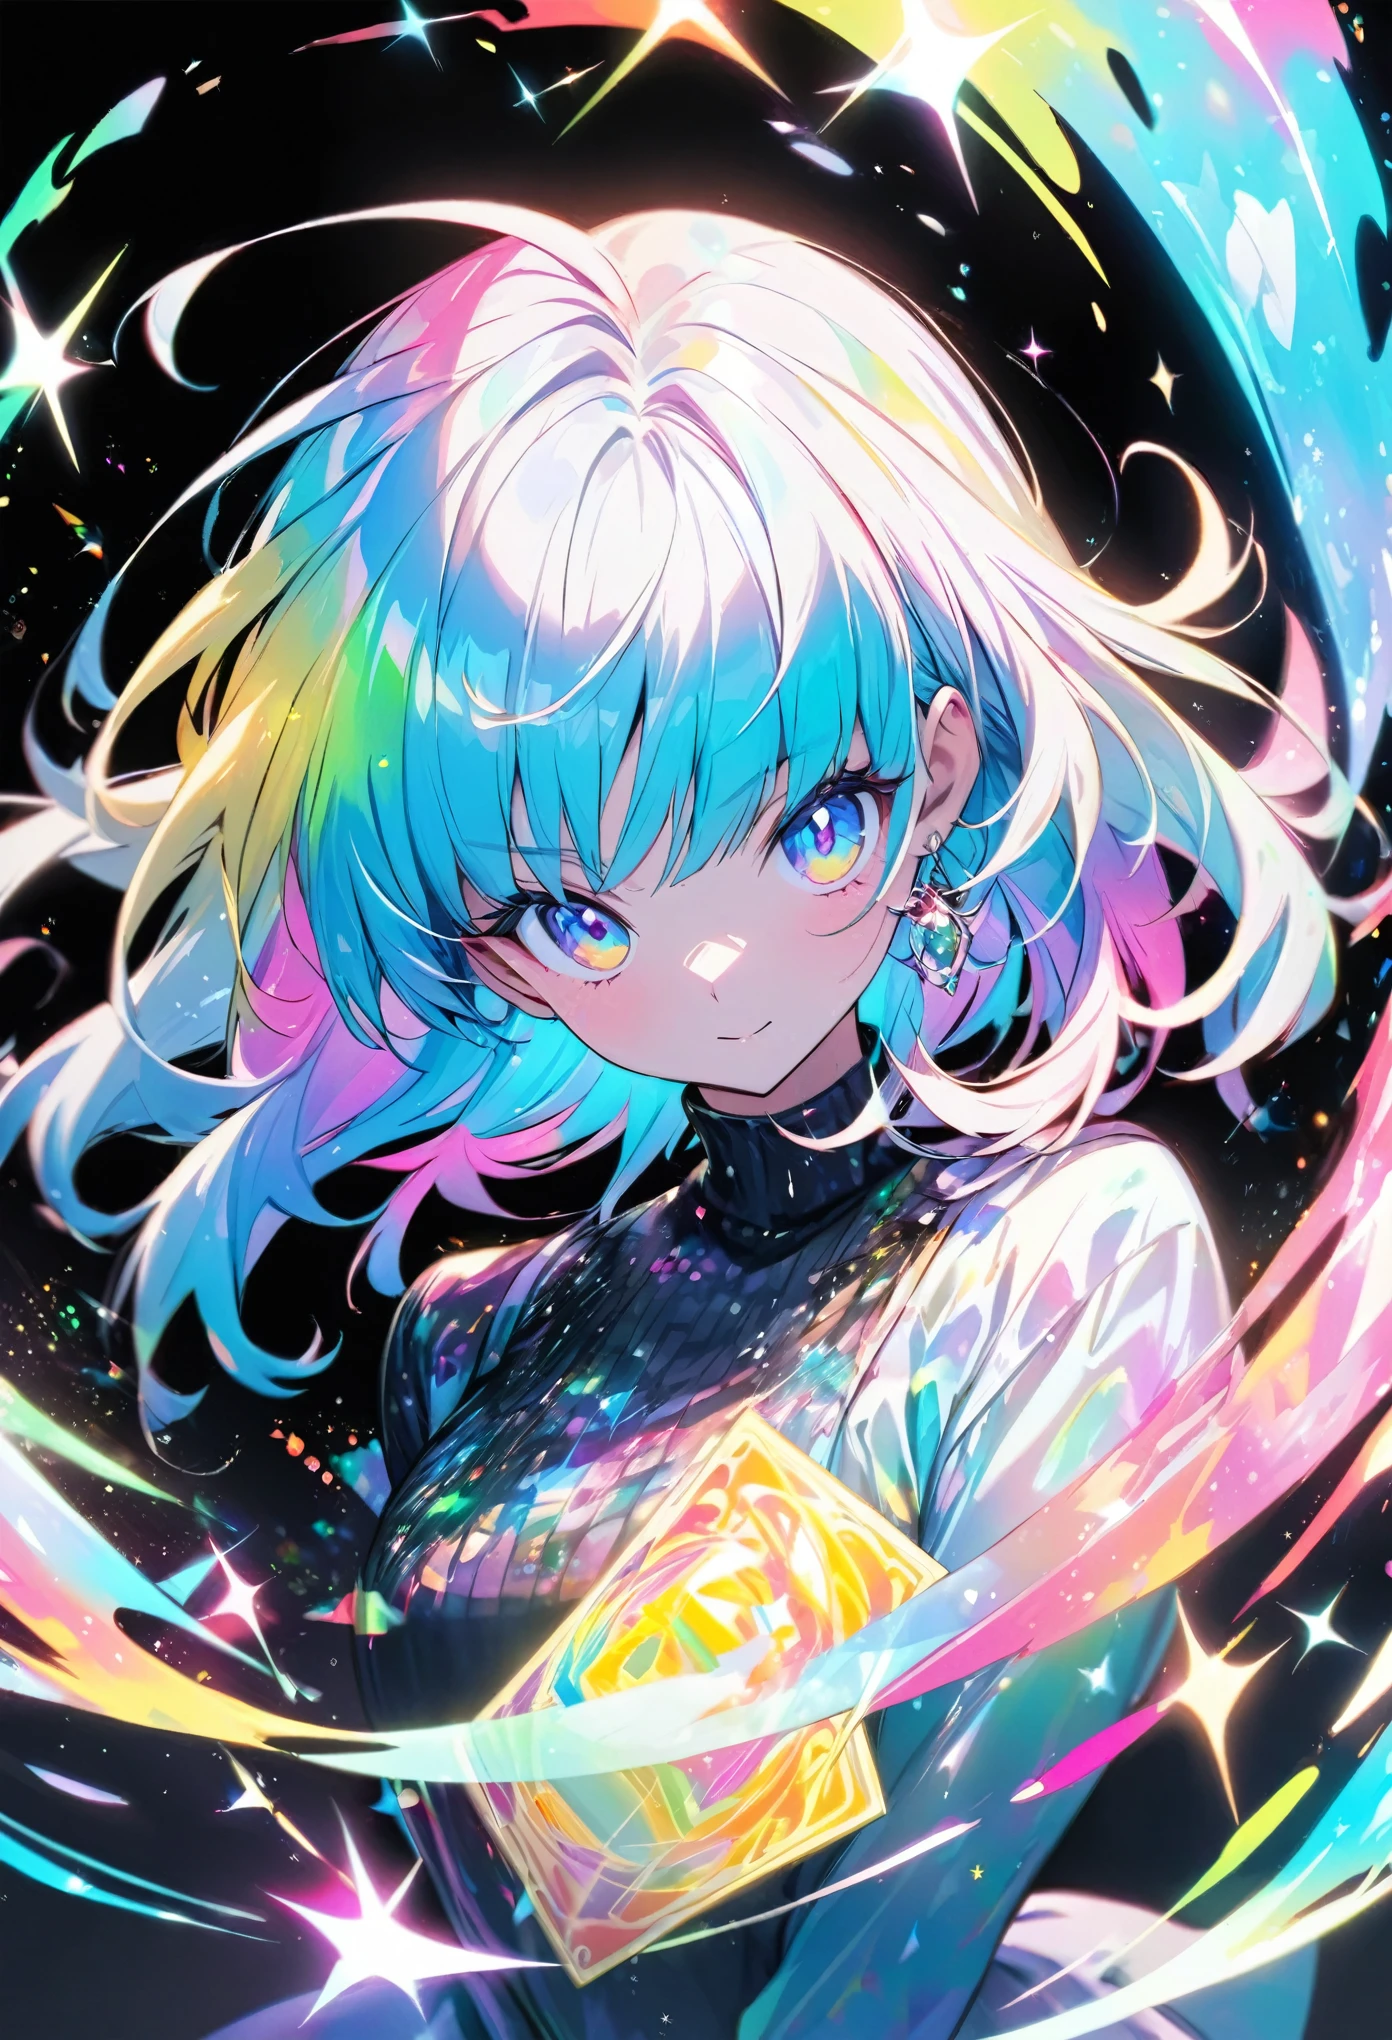 Качественная голограмма с изображением девушки в стиле аниме., с блестками, перламутр, и черный фон вокруг карты, четкая окраска, и красочный